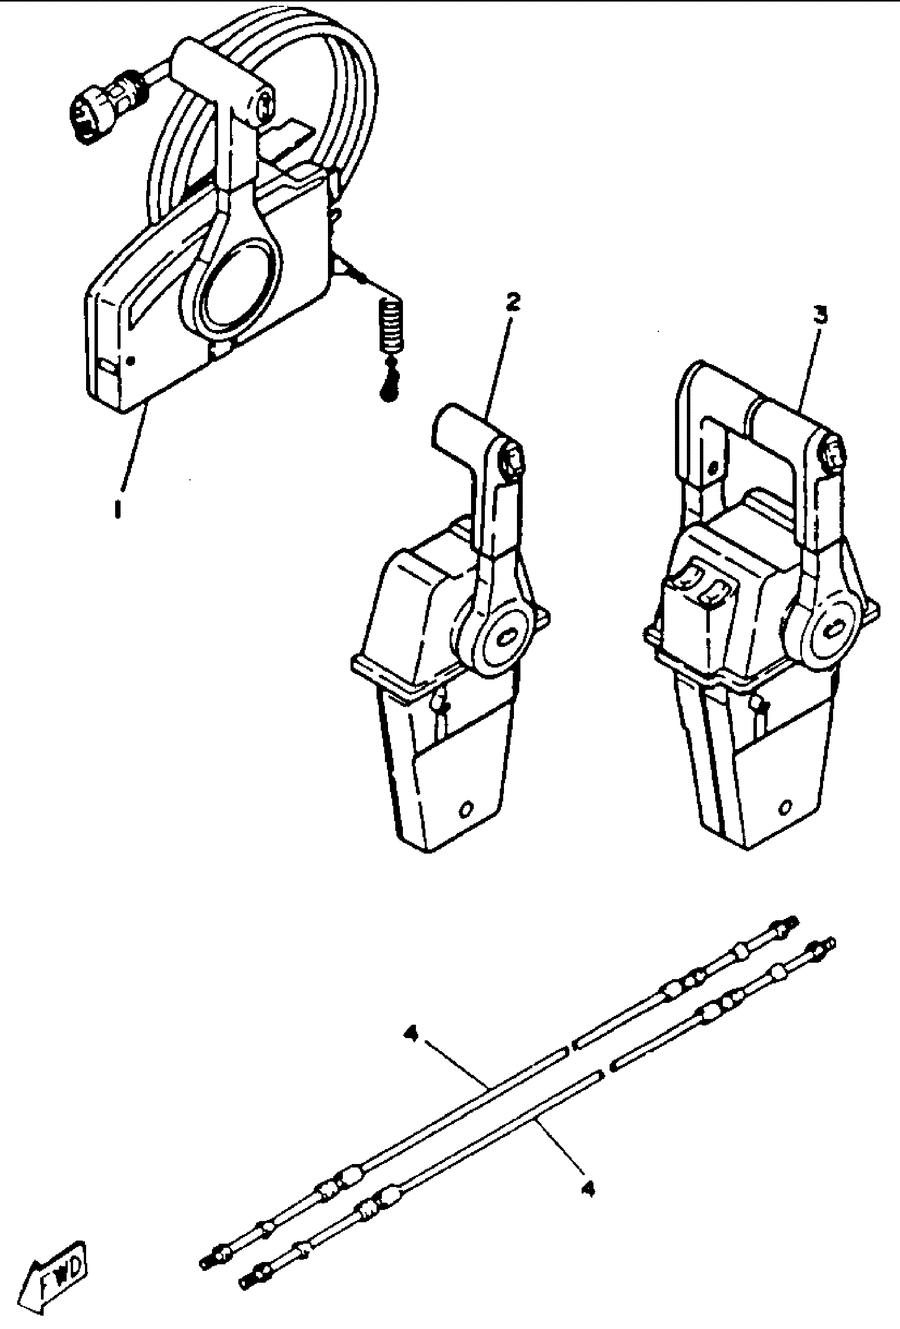 1993 150TXRR REMOTE CONTROL CABLES